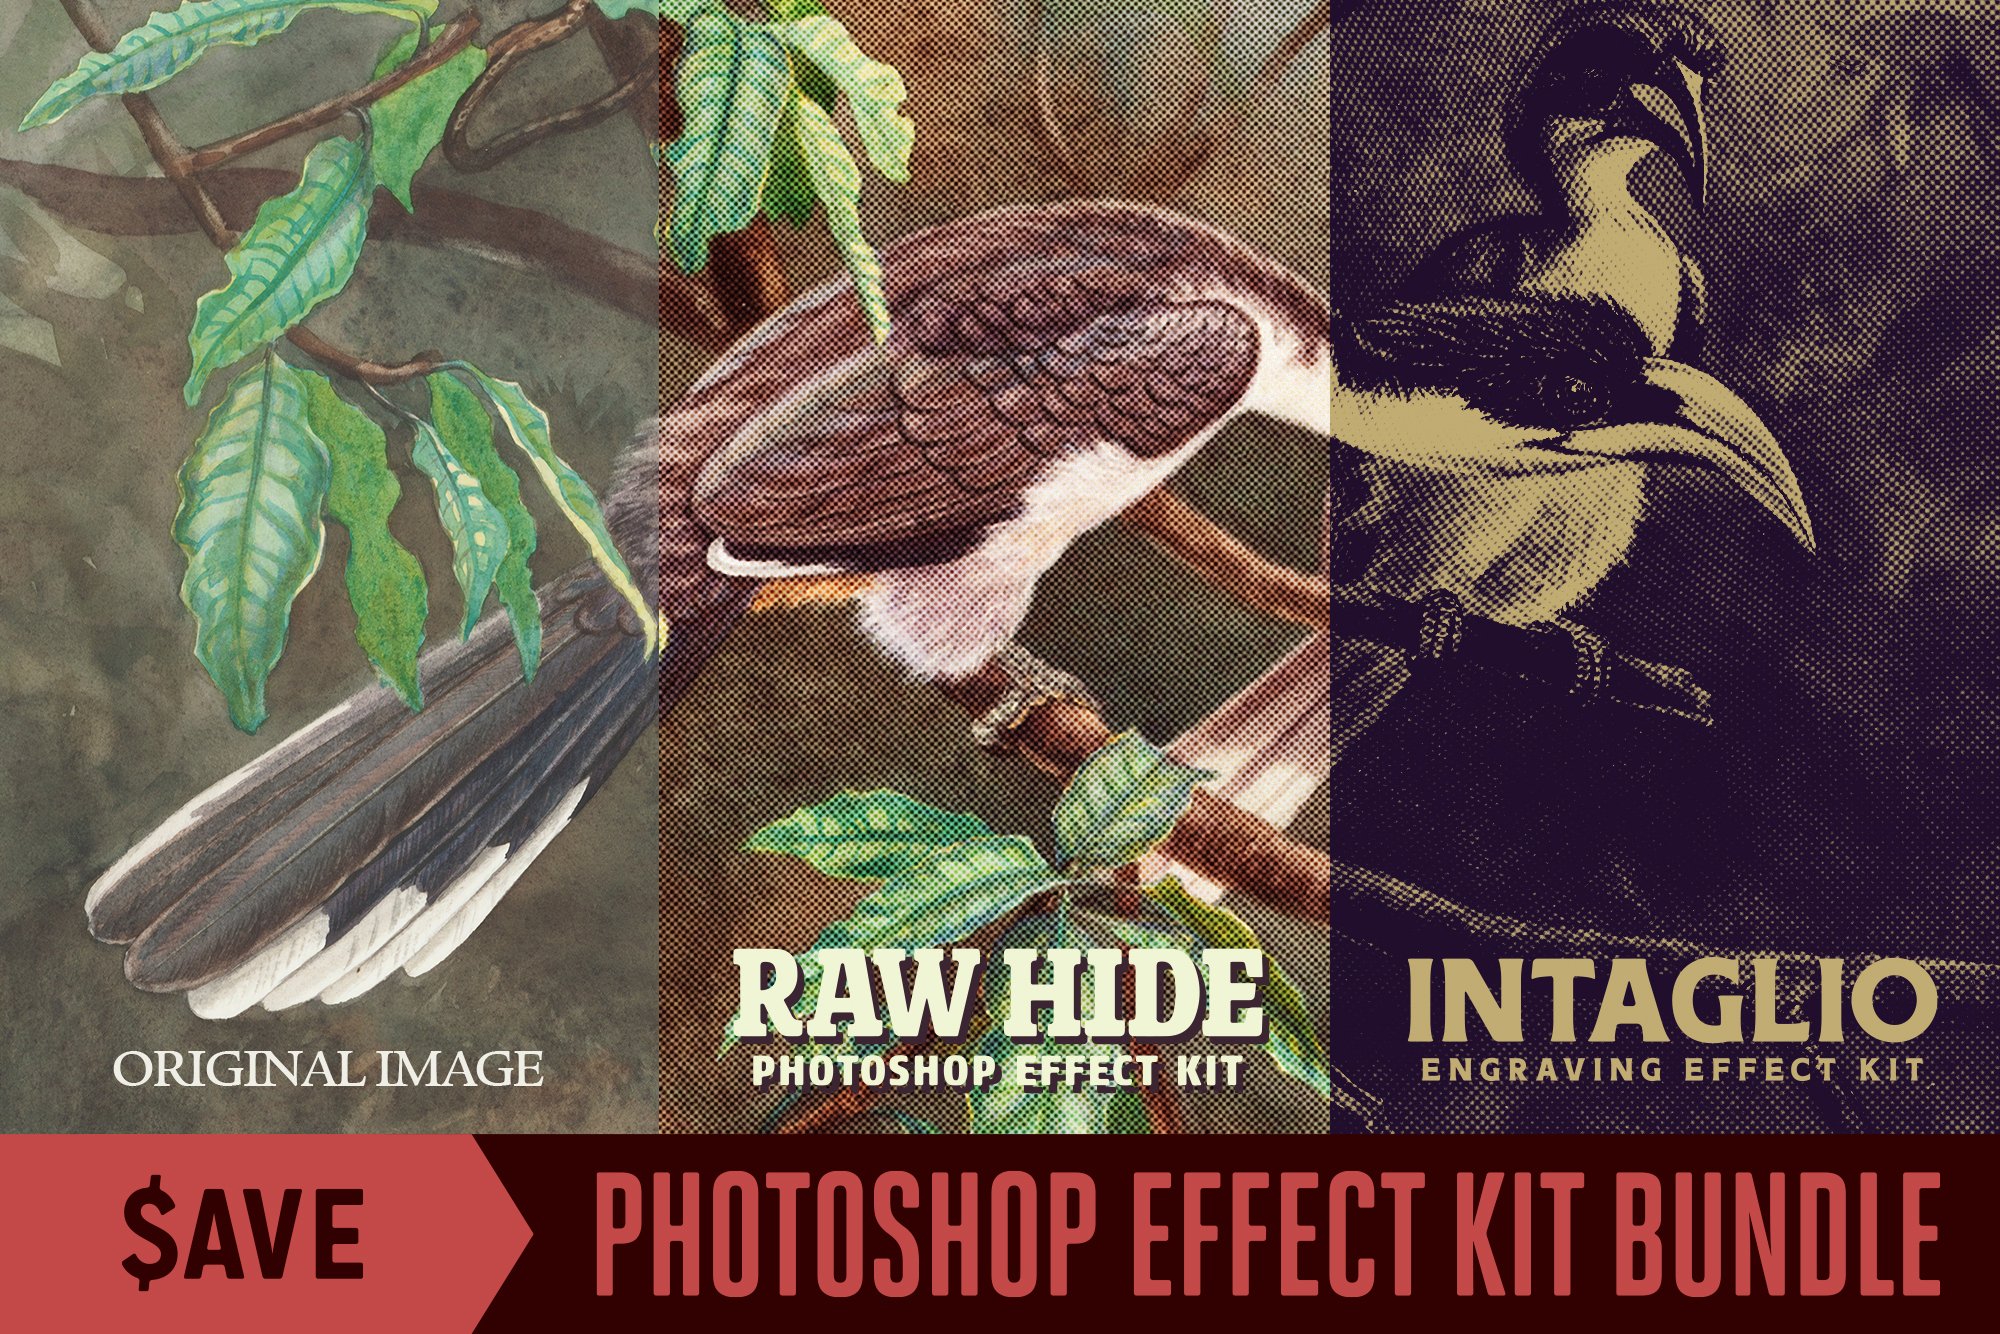 Photoshop Effect Kit Bundlecover image.